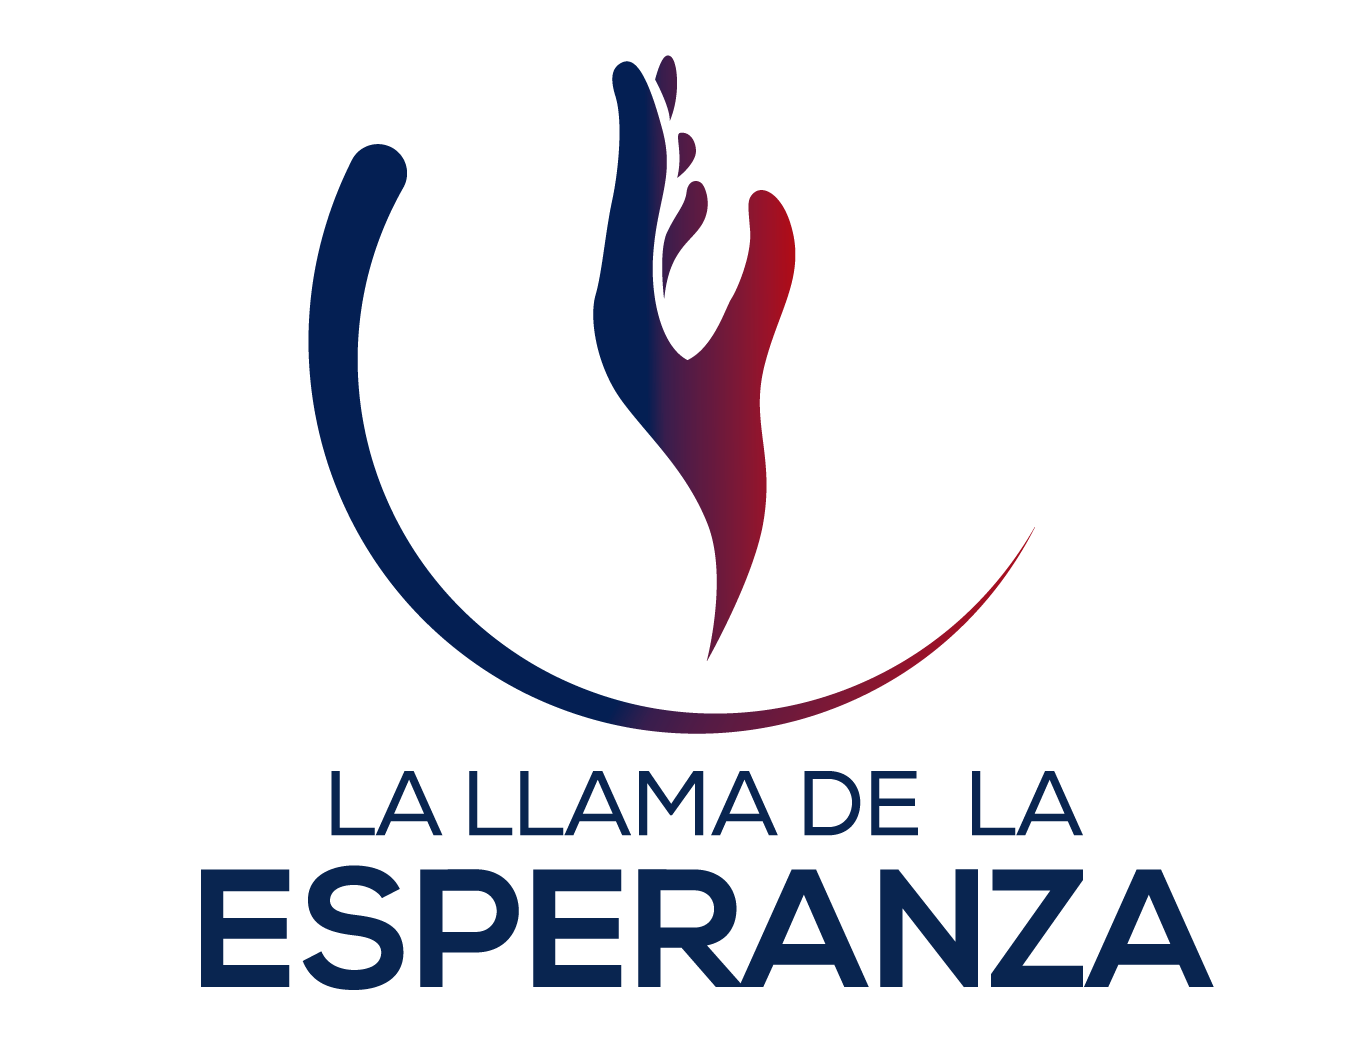 Esperanza Logo Logodix 